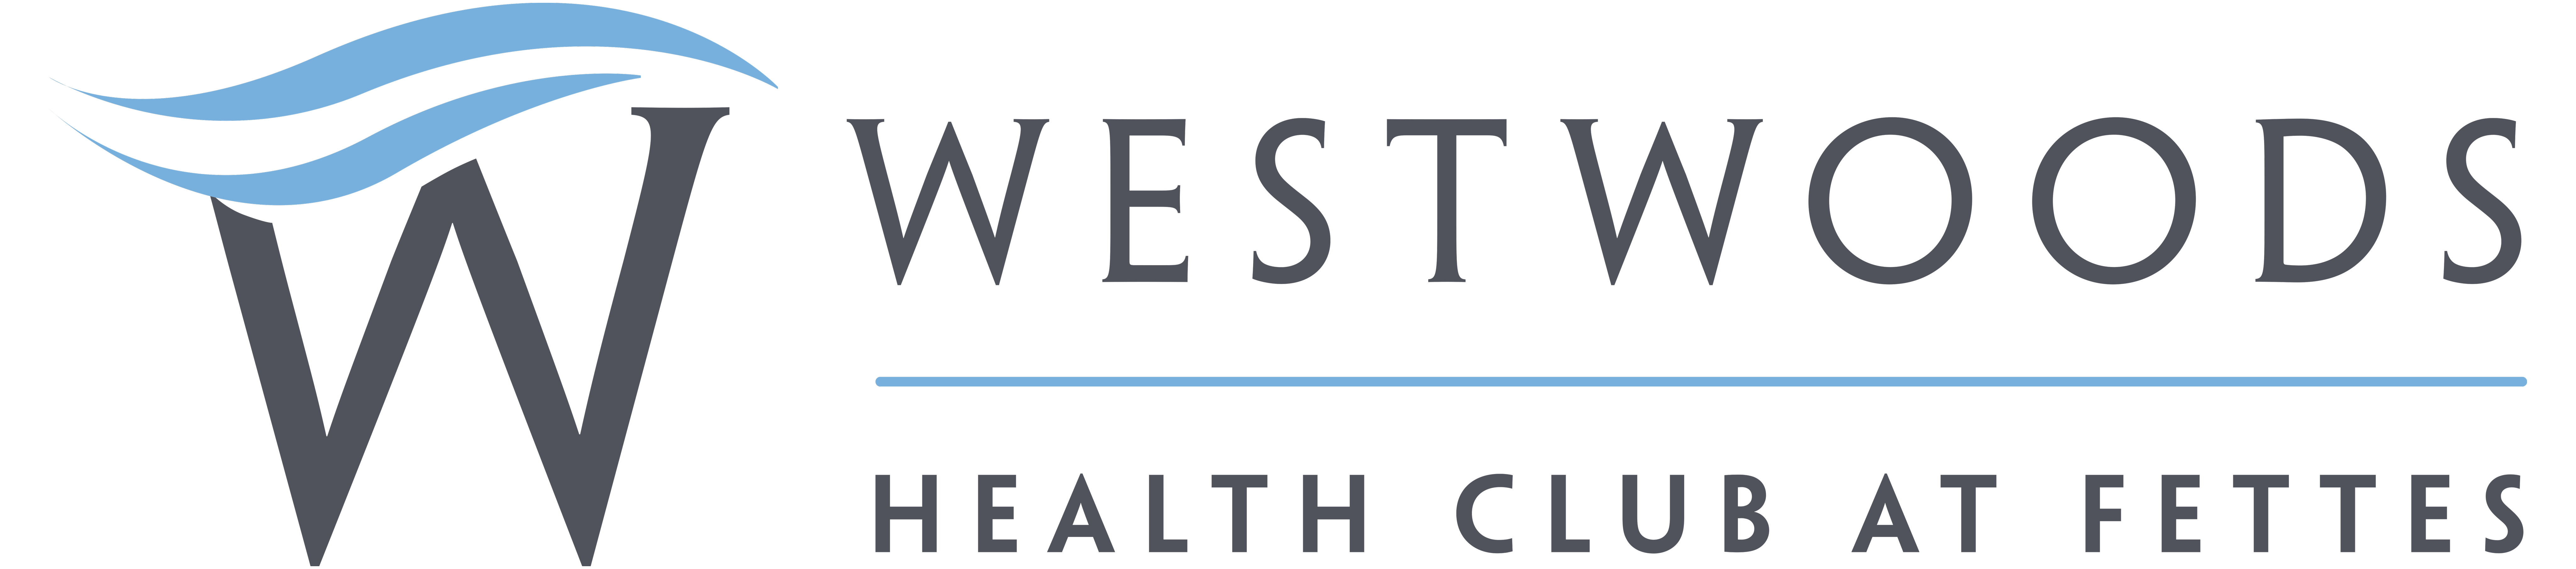 Westwood Health Club